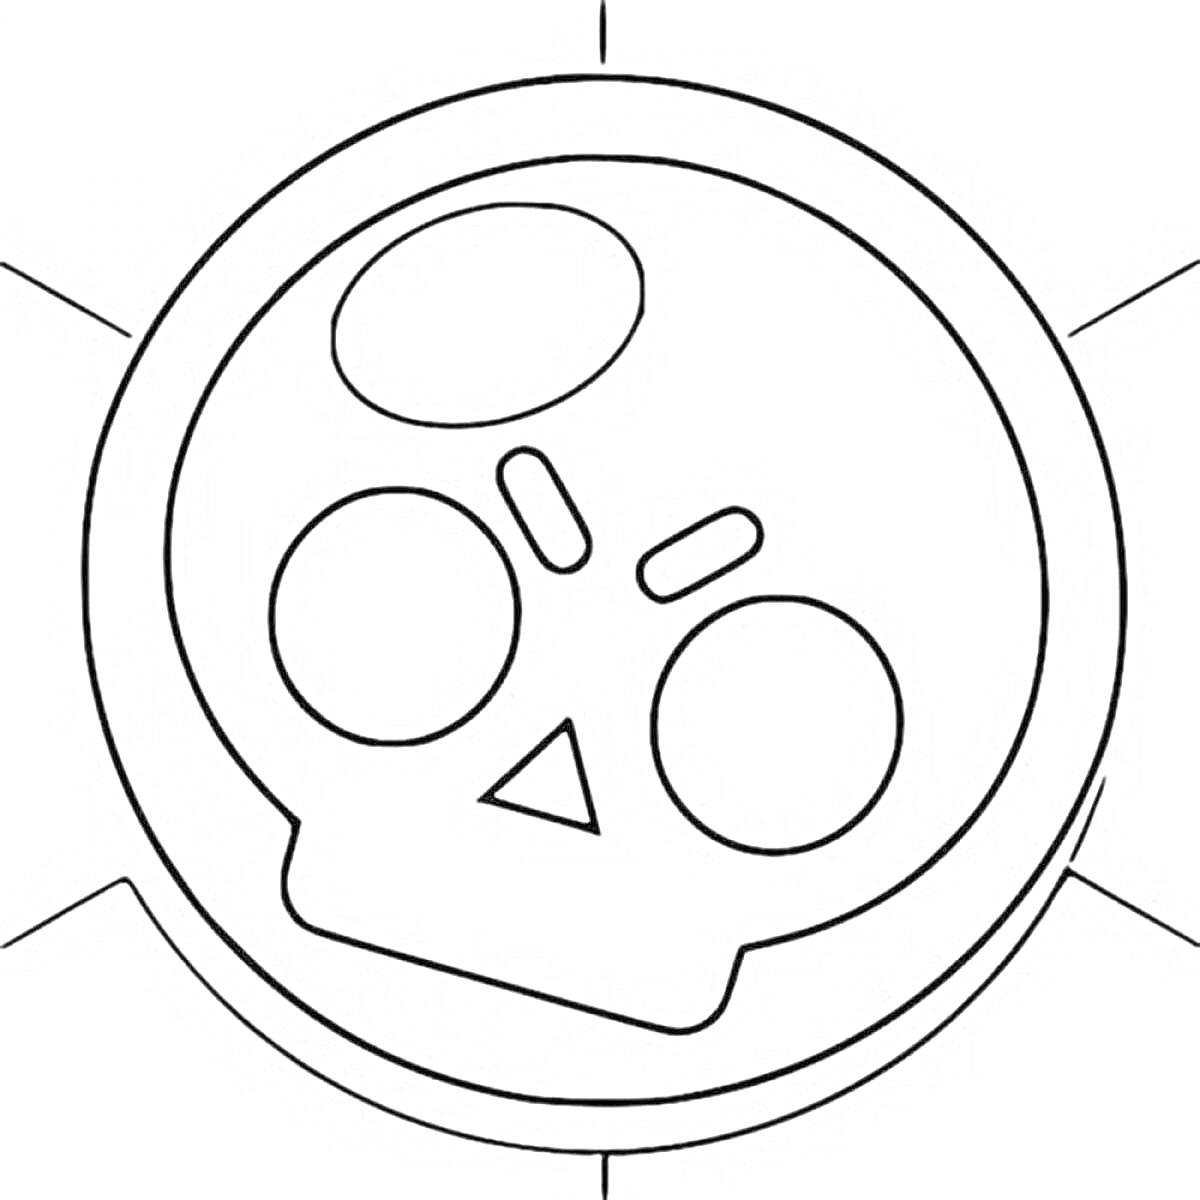 Раскраска Логотип Бравл Старс с изображением черепа и кругом